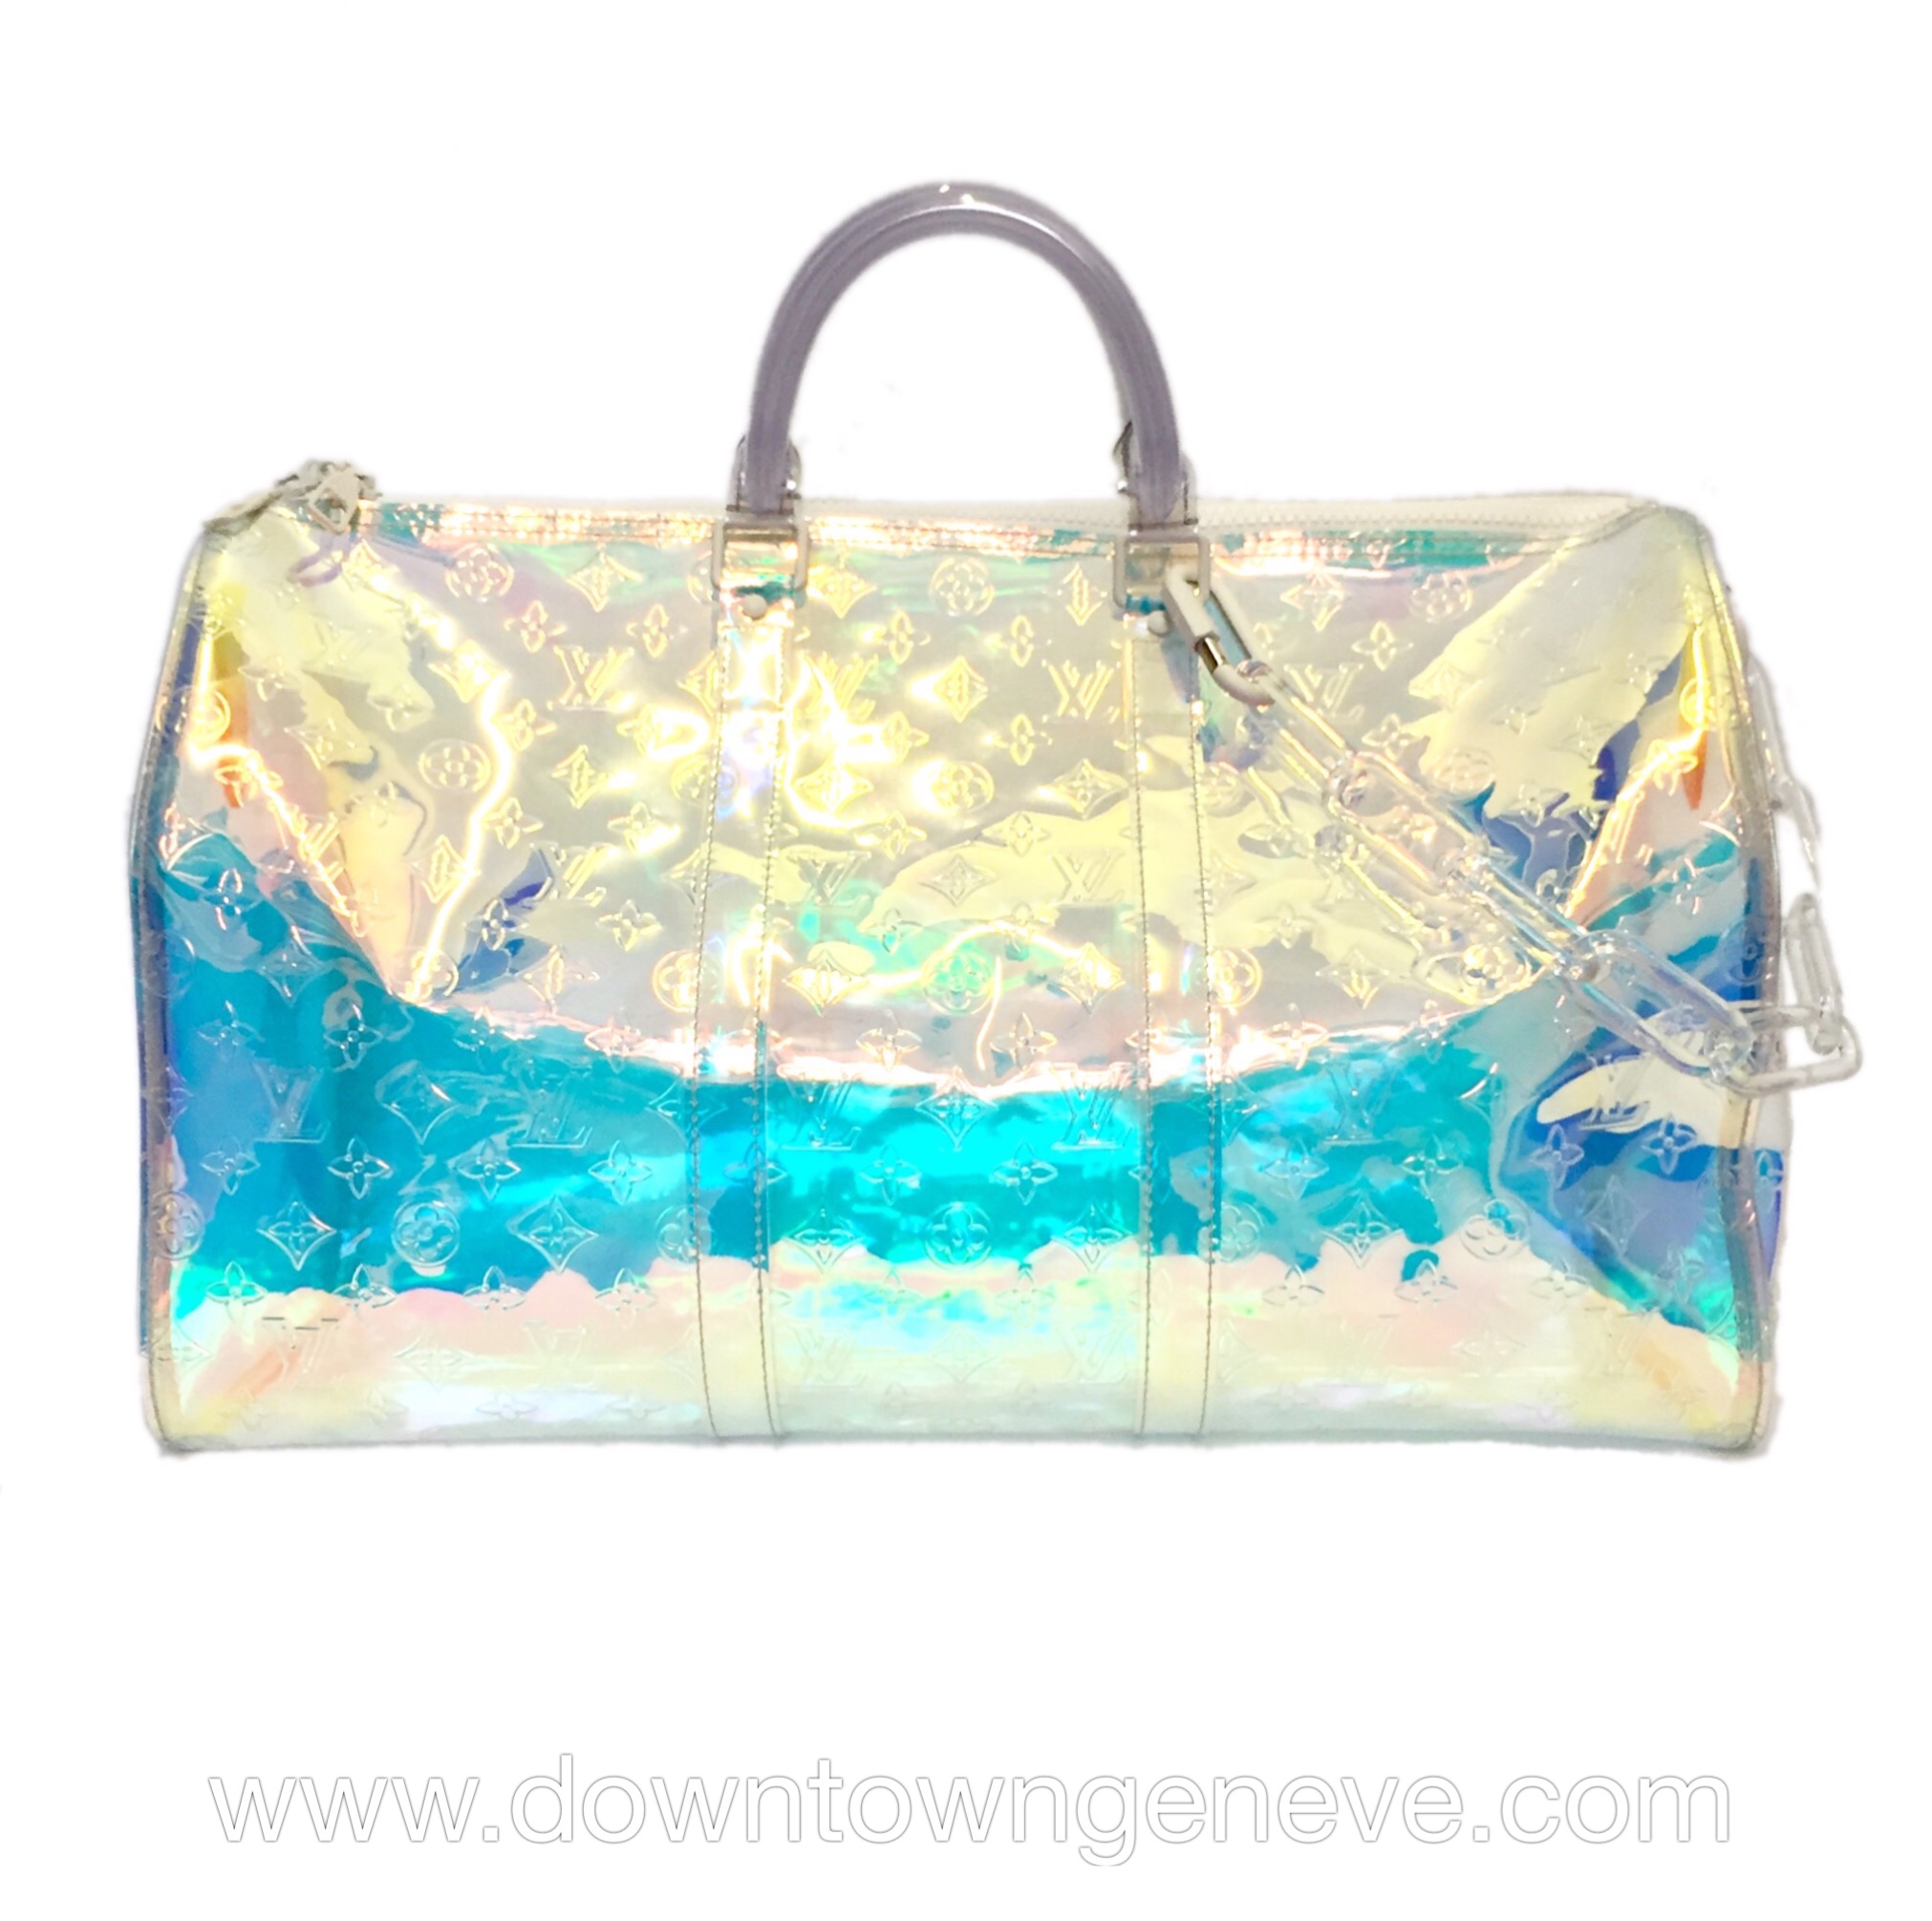 Louis Vuitton Prism duffle bag - DOWNTOWN UPTOWN Genève